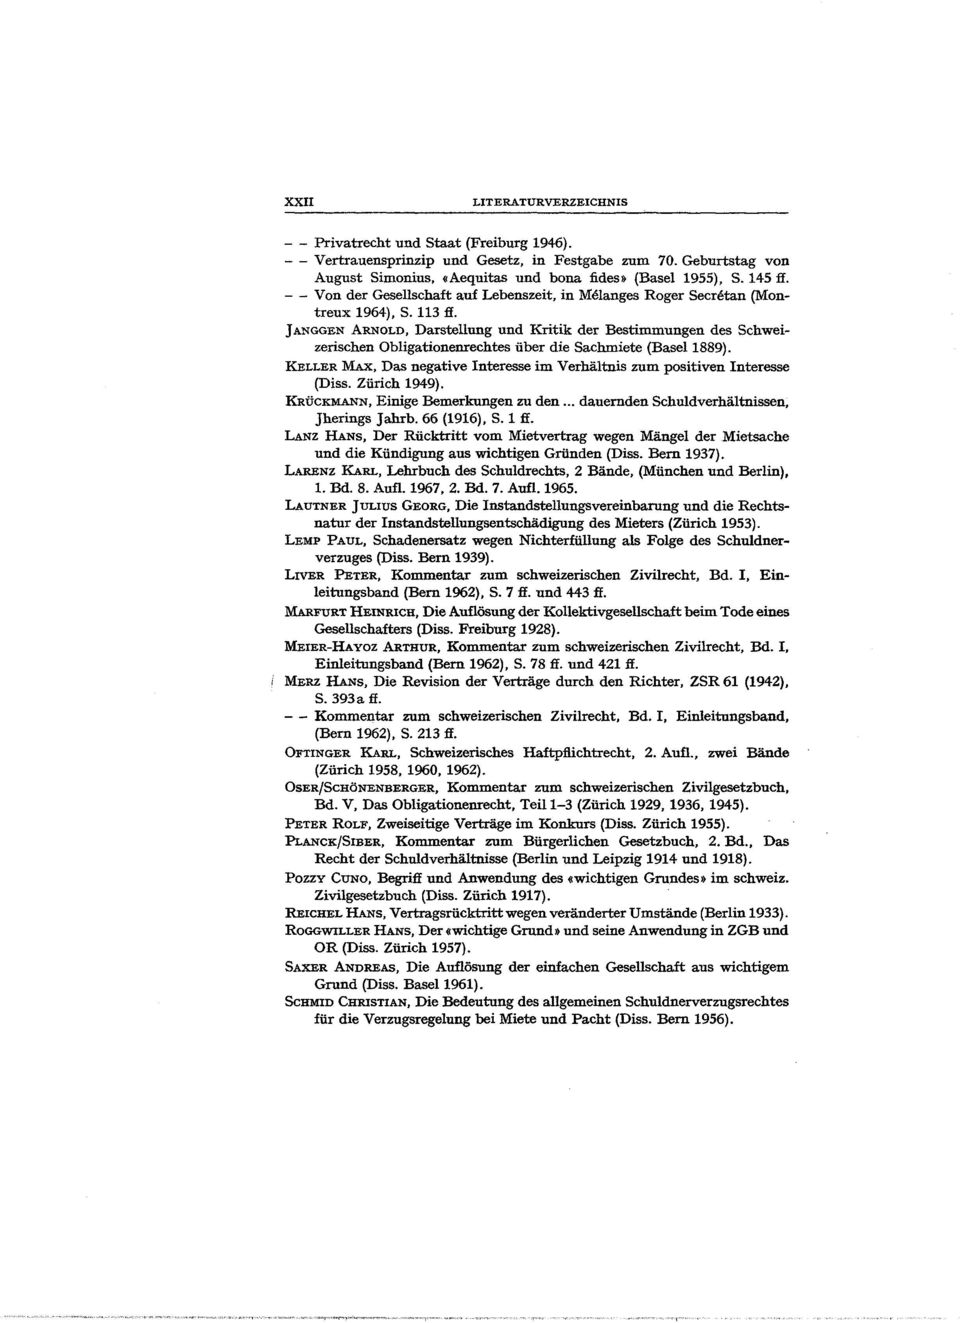 J ANGGEN ARNoLD, Darstellung und Kritik der Bestimmungen des Schweizerischen Obligationenrechtes über die Sachmiete (Basel 1889).